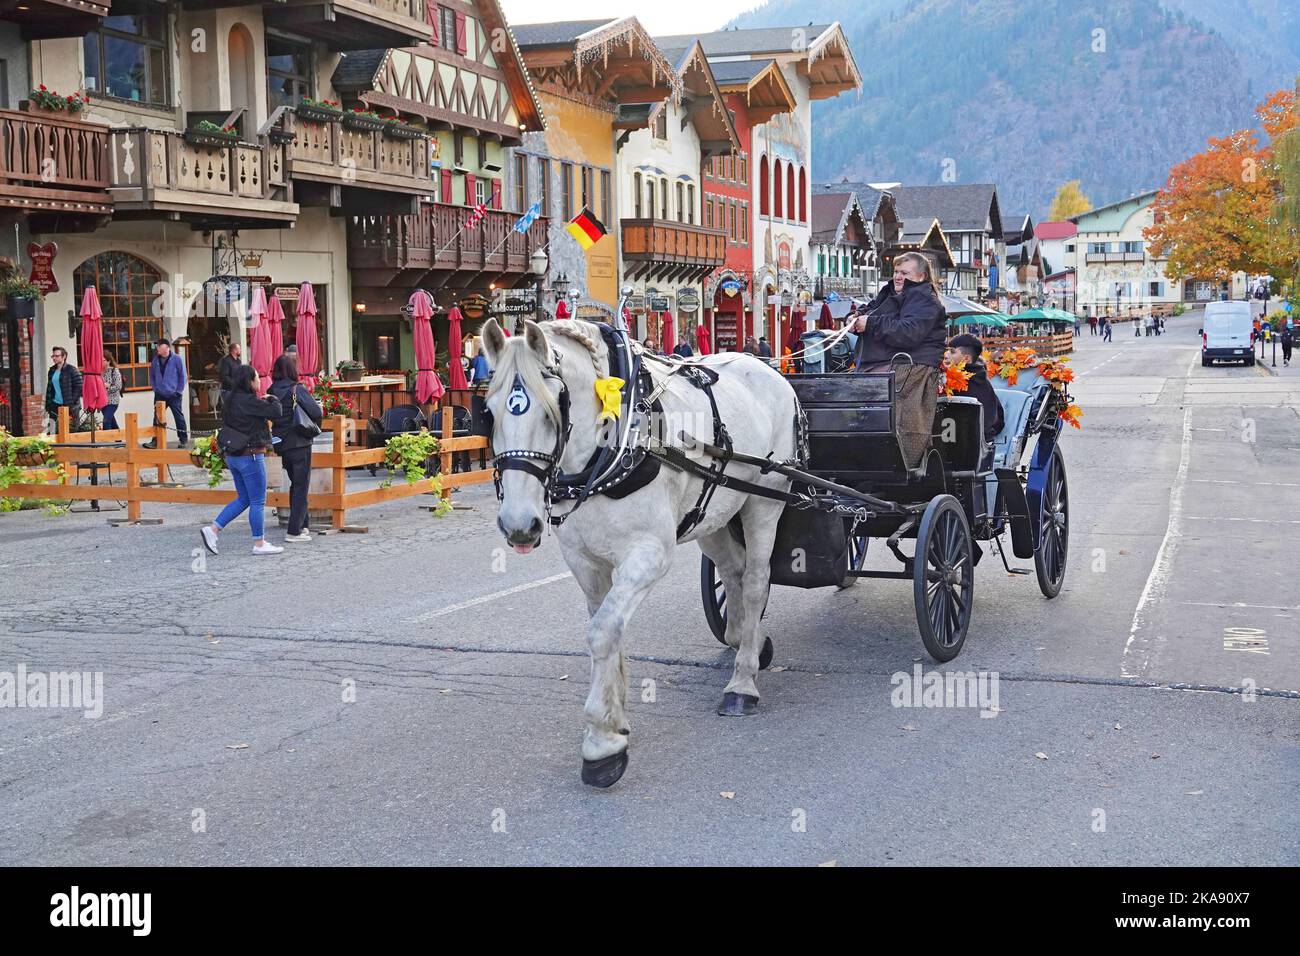 Un carruaje tirado por caballos transporta a turistas y visitantes por las calles de la pequeña ciudad de estilo bávaro de Leavenworth, Washington. Foto de stock